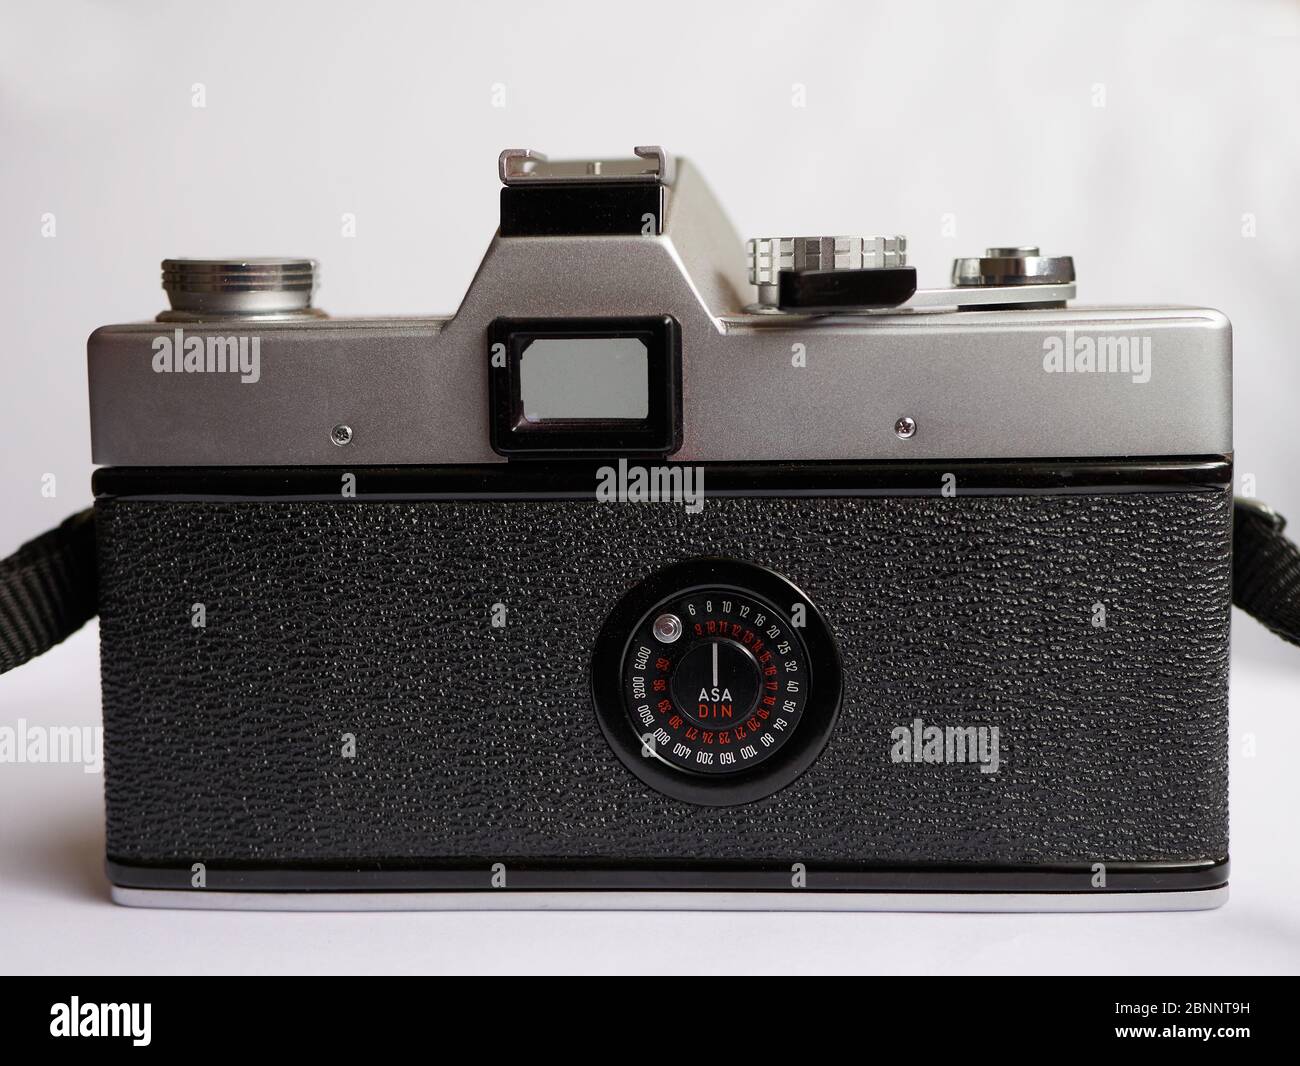 Minolta SR-T 101 telecamera analogica da 35 mm vintage, lanciata nel 1966. Vista posteriore. Foto Stock